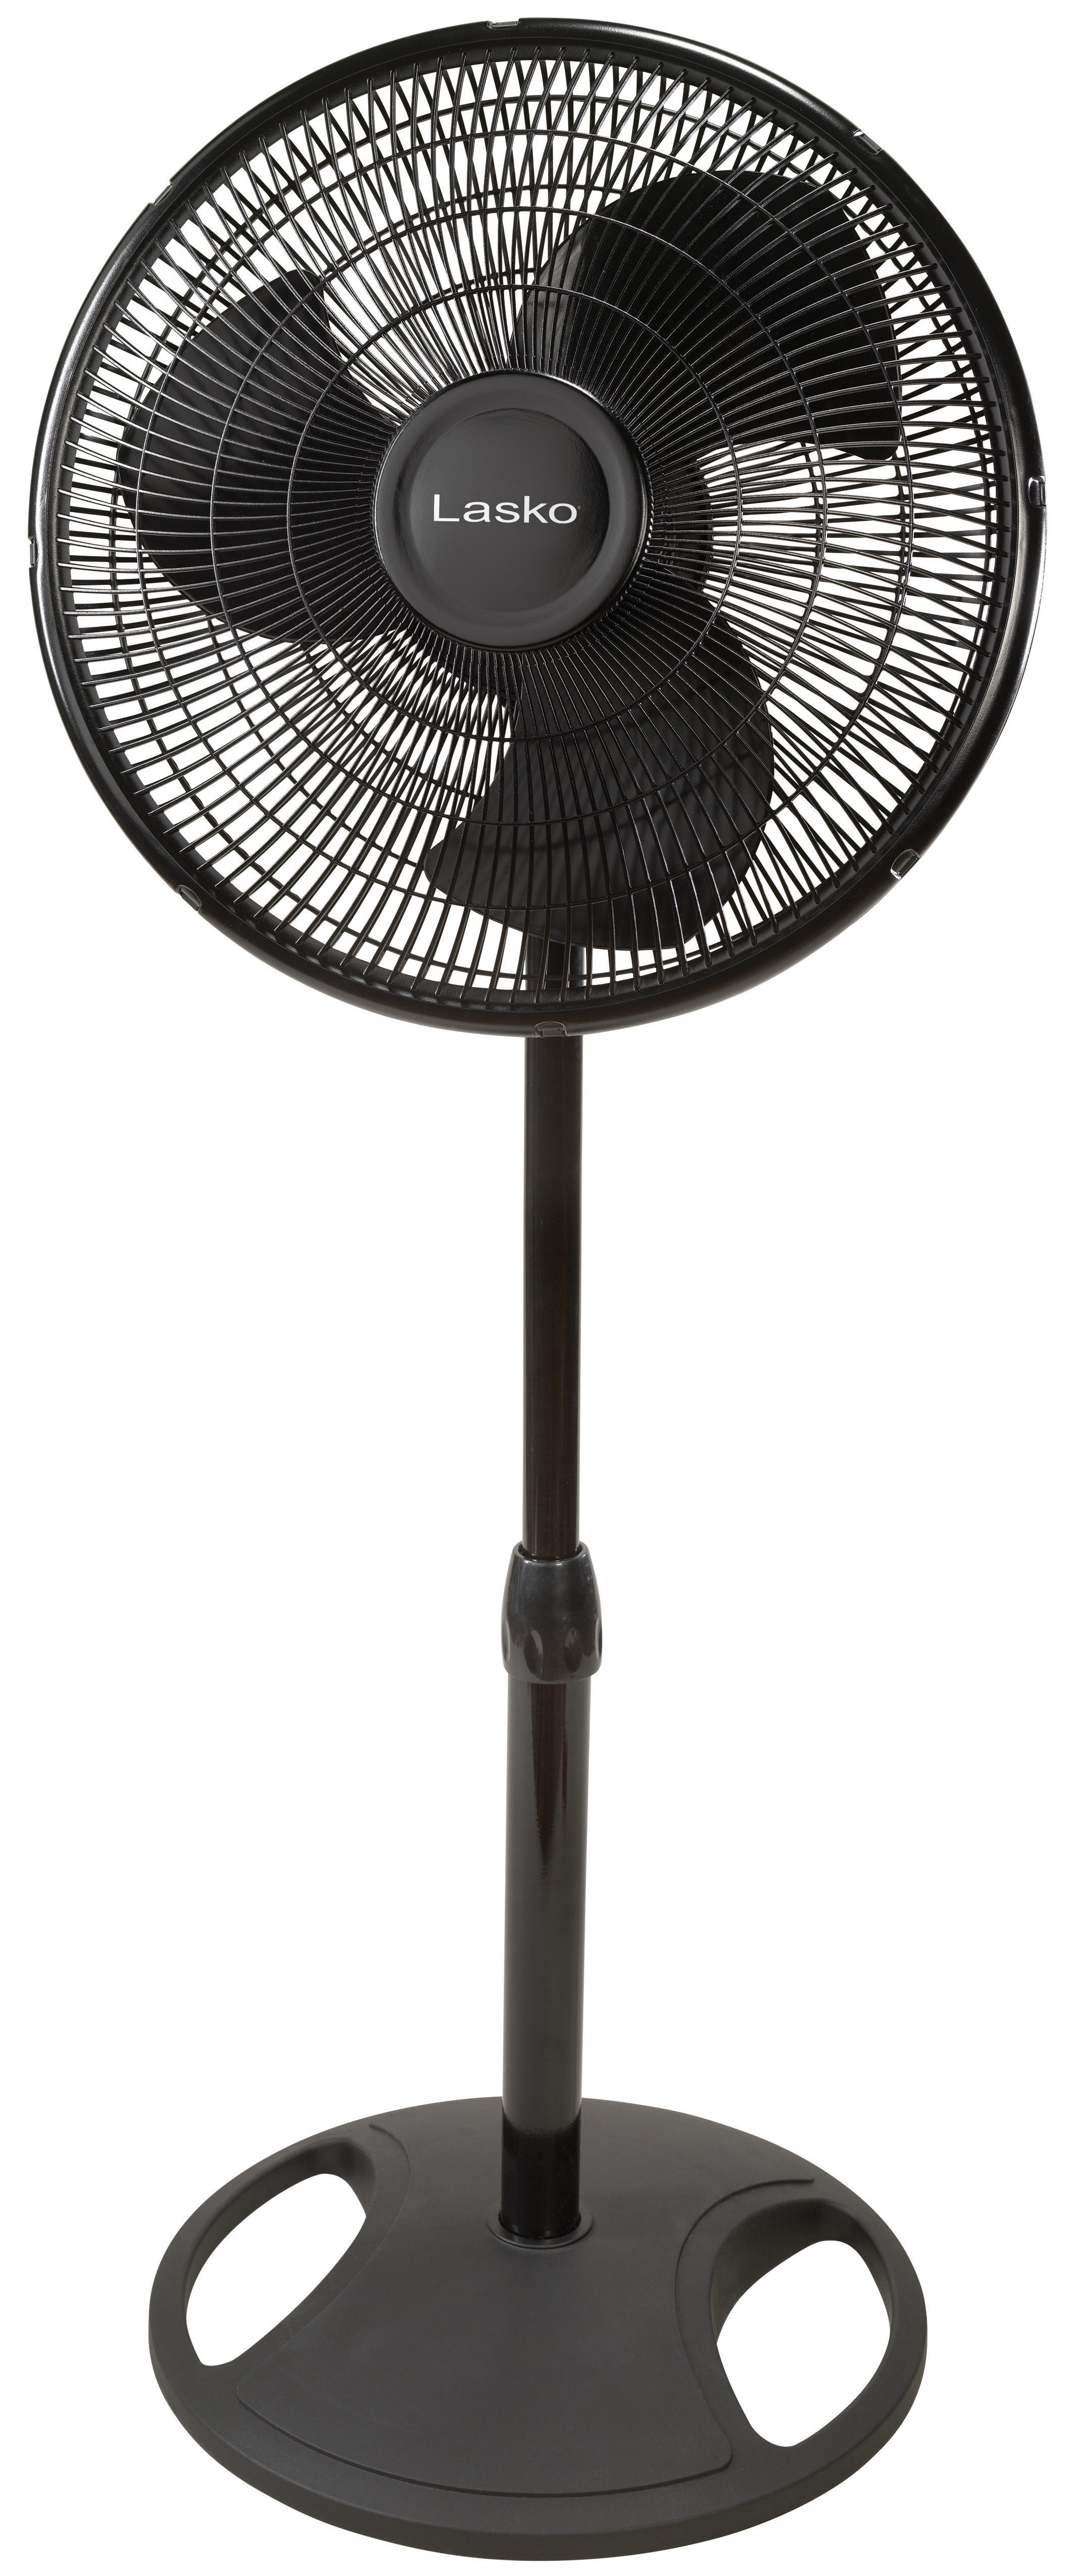 The black fan